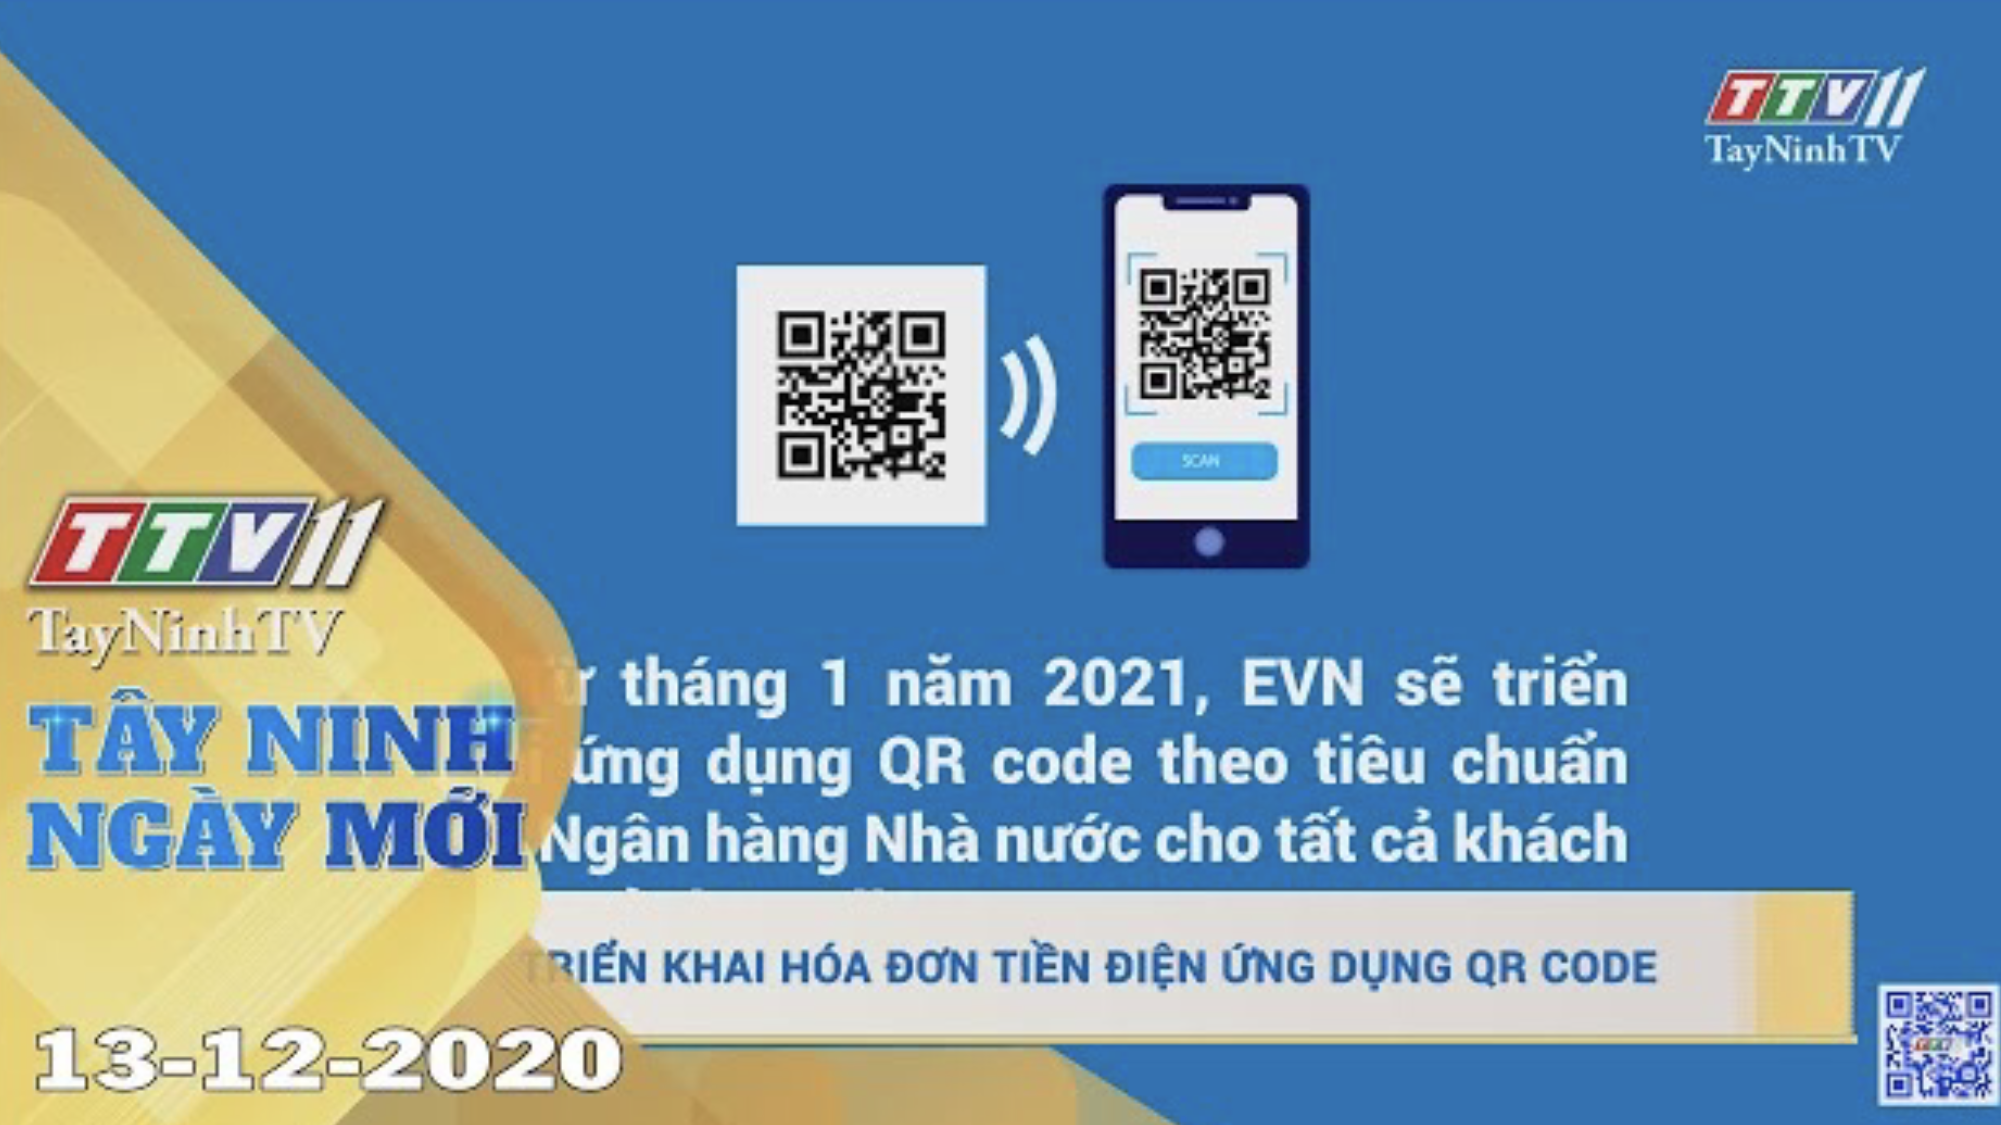 Tây Ninh Ngày Mới 13-12-2020 | Tin tức hôm nay | TayNinhTV